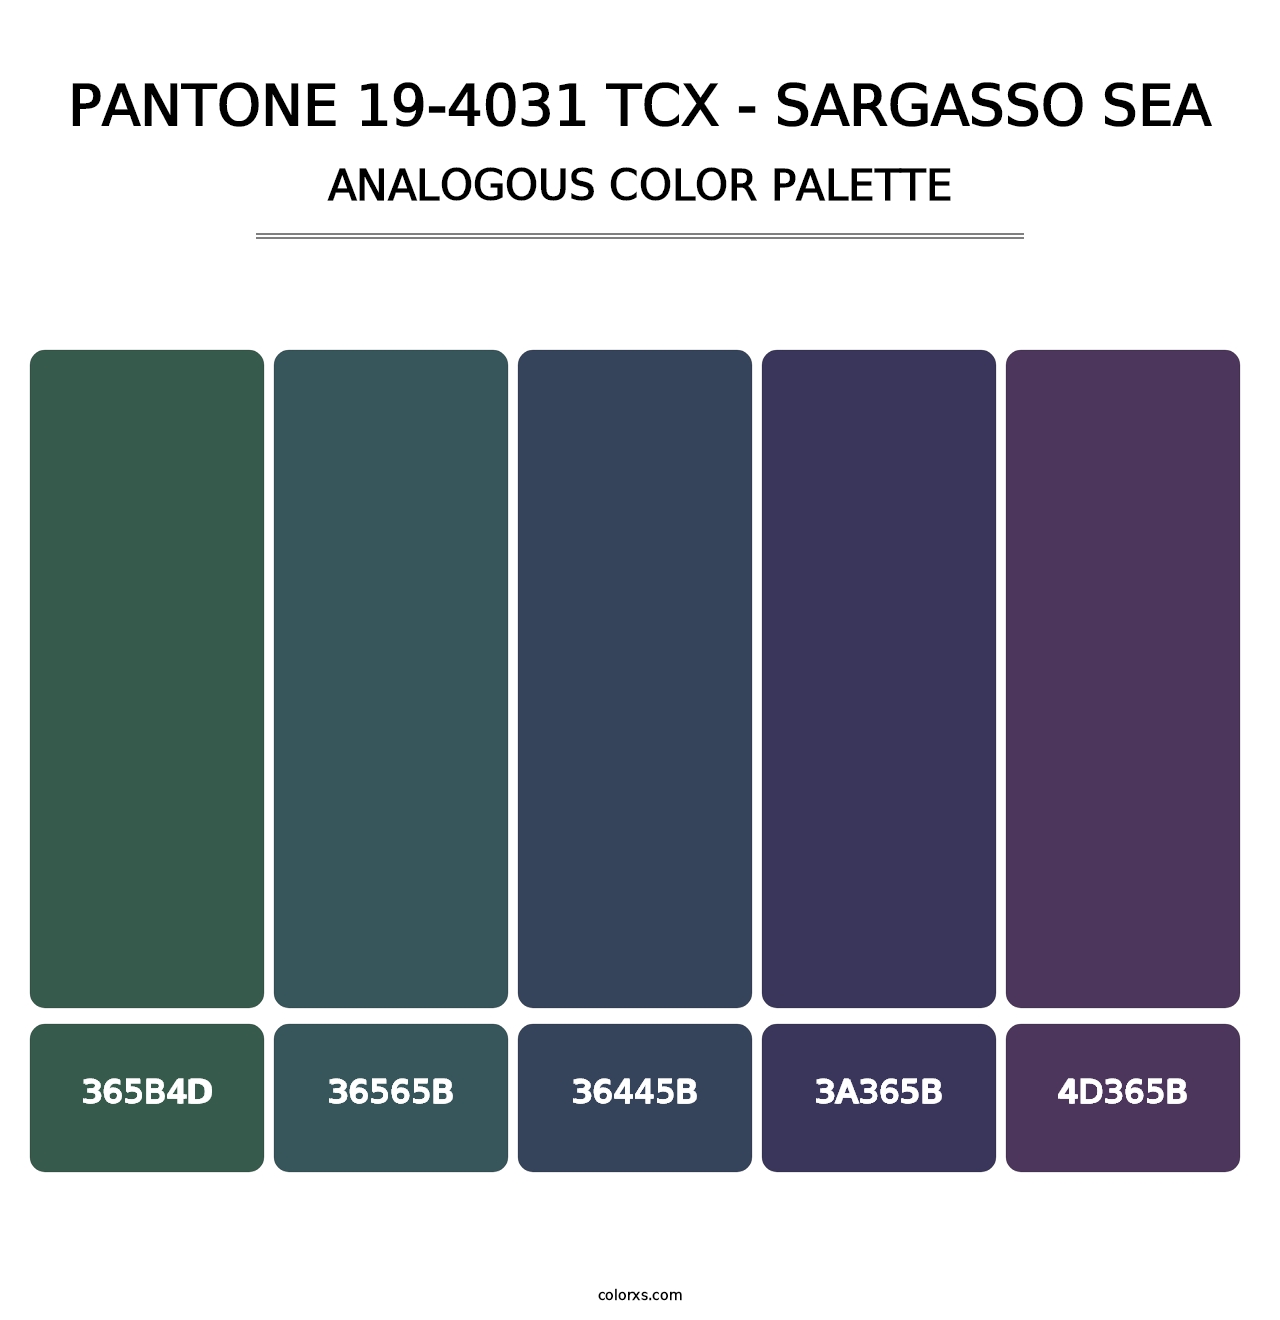 PANTONE 19-4031 TCX - Sargasso Sea - Analogous Color Palette